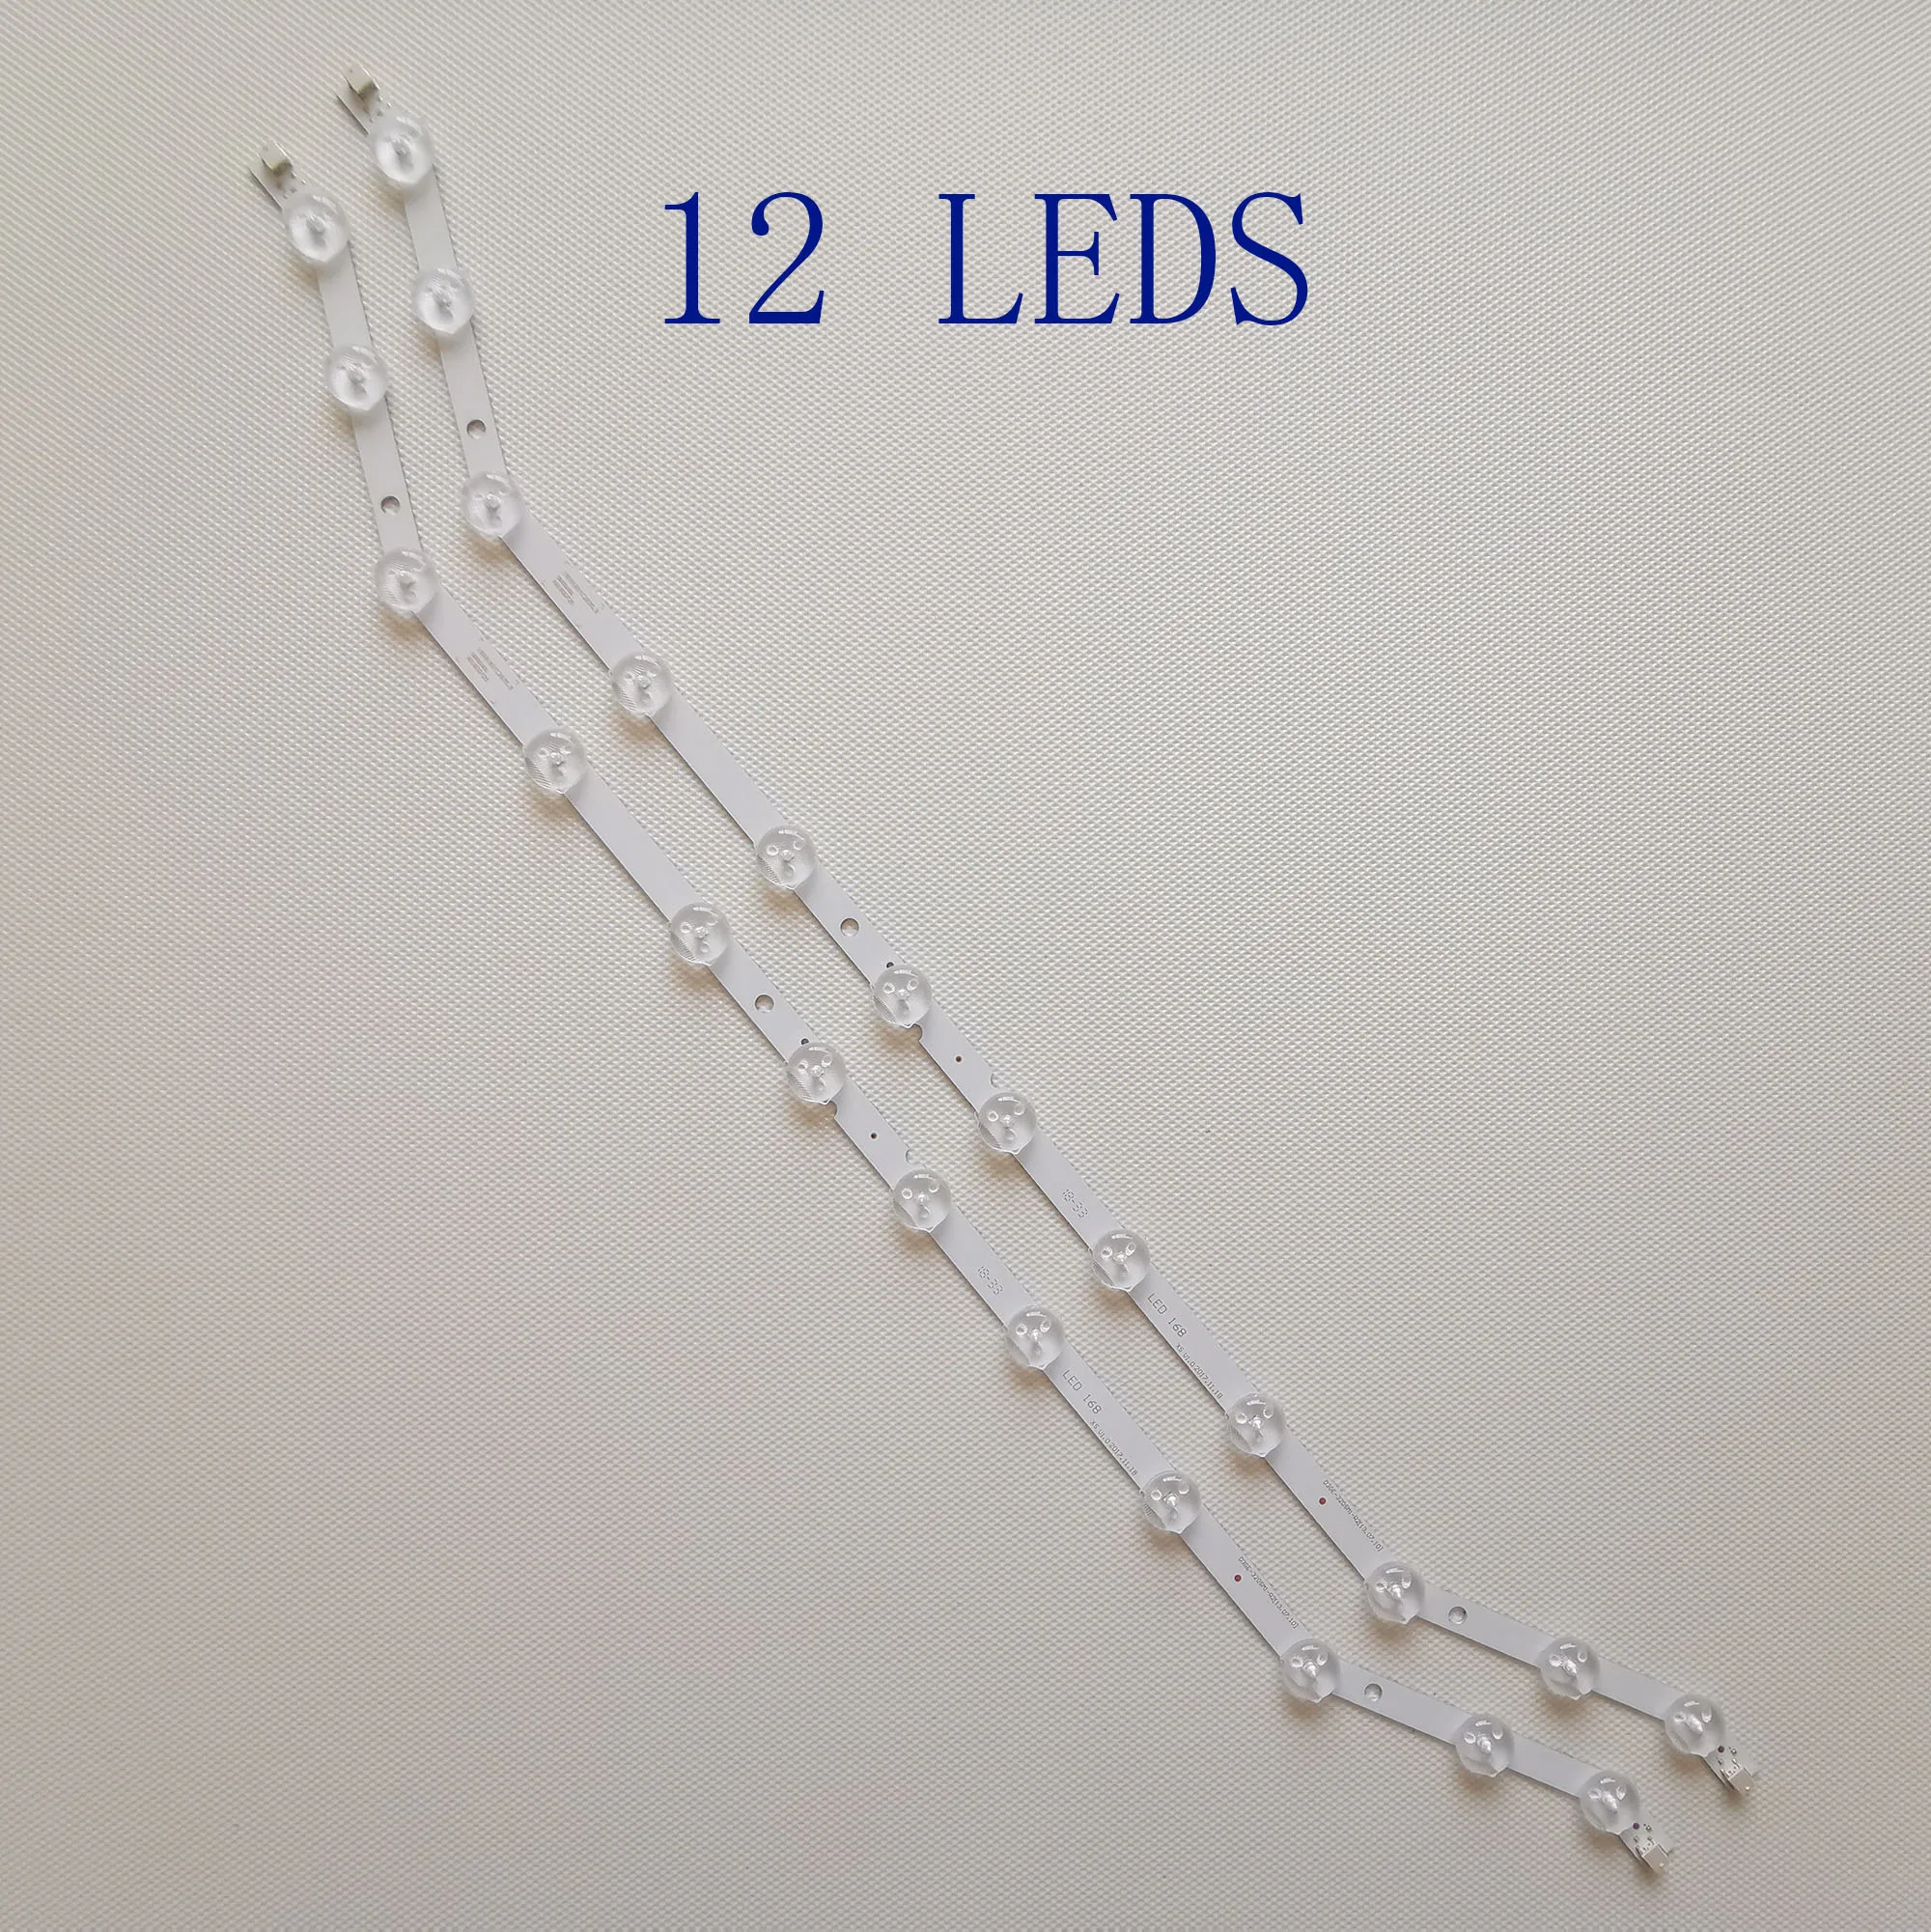 

100 Pieces 12 Lamp LED Strip D3GE-320SM1-R2 LM41-00001S BN96-28763A LM41-00001R 2013SVS32 BN96-35204A BN96-34193A